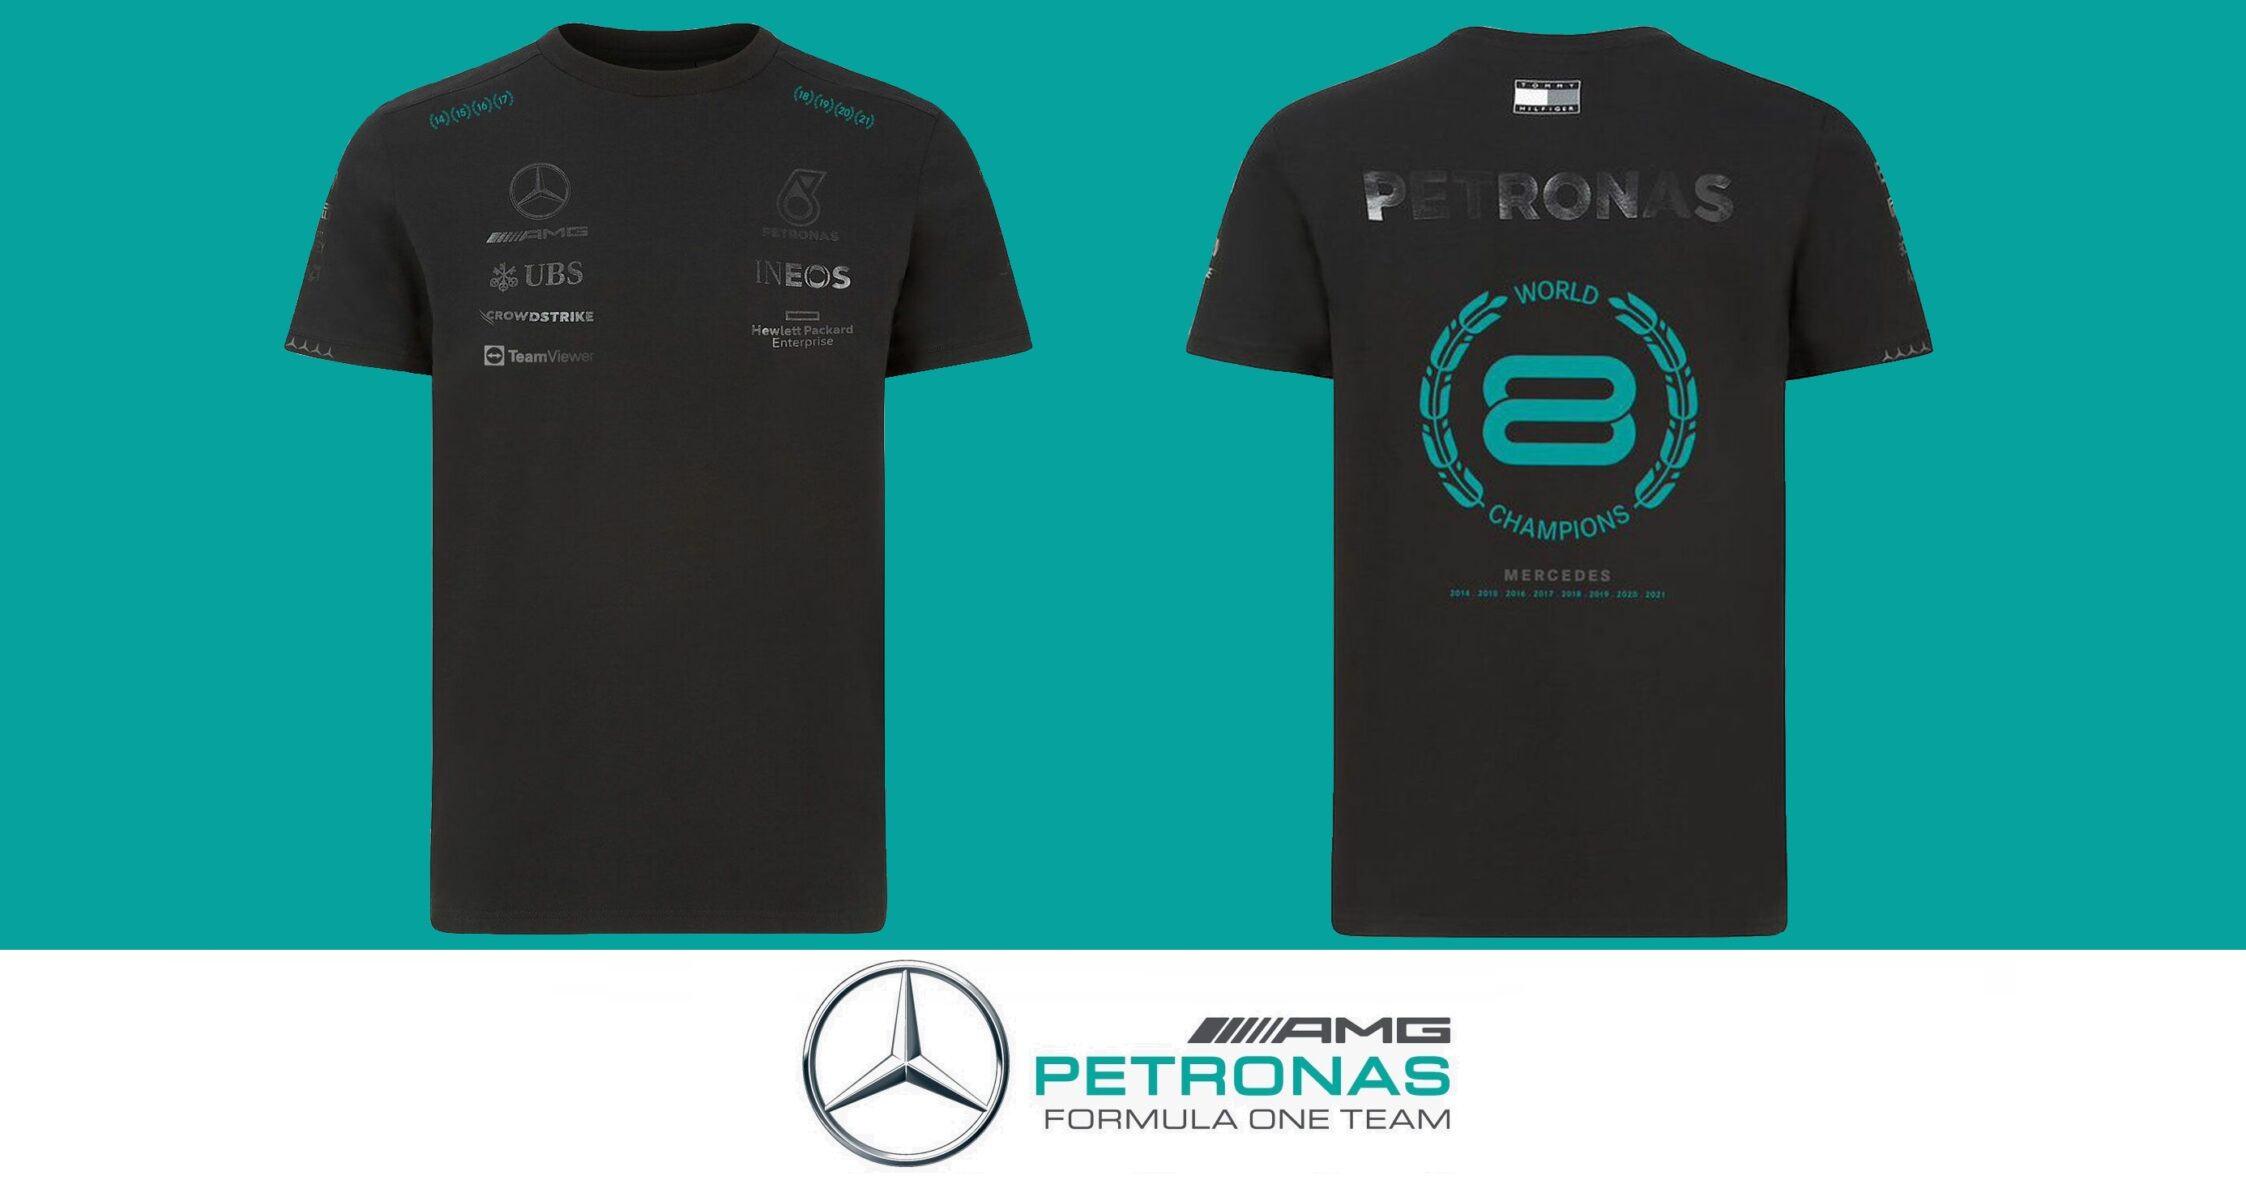 Mercedes championships メルセデス チャンピオンシップ